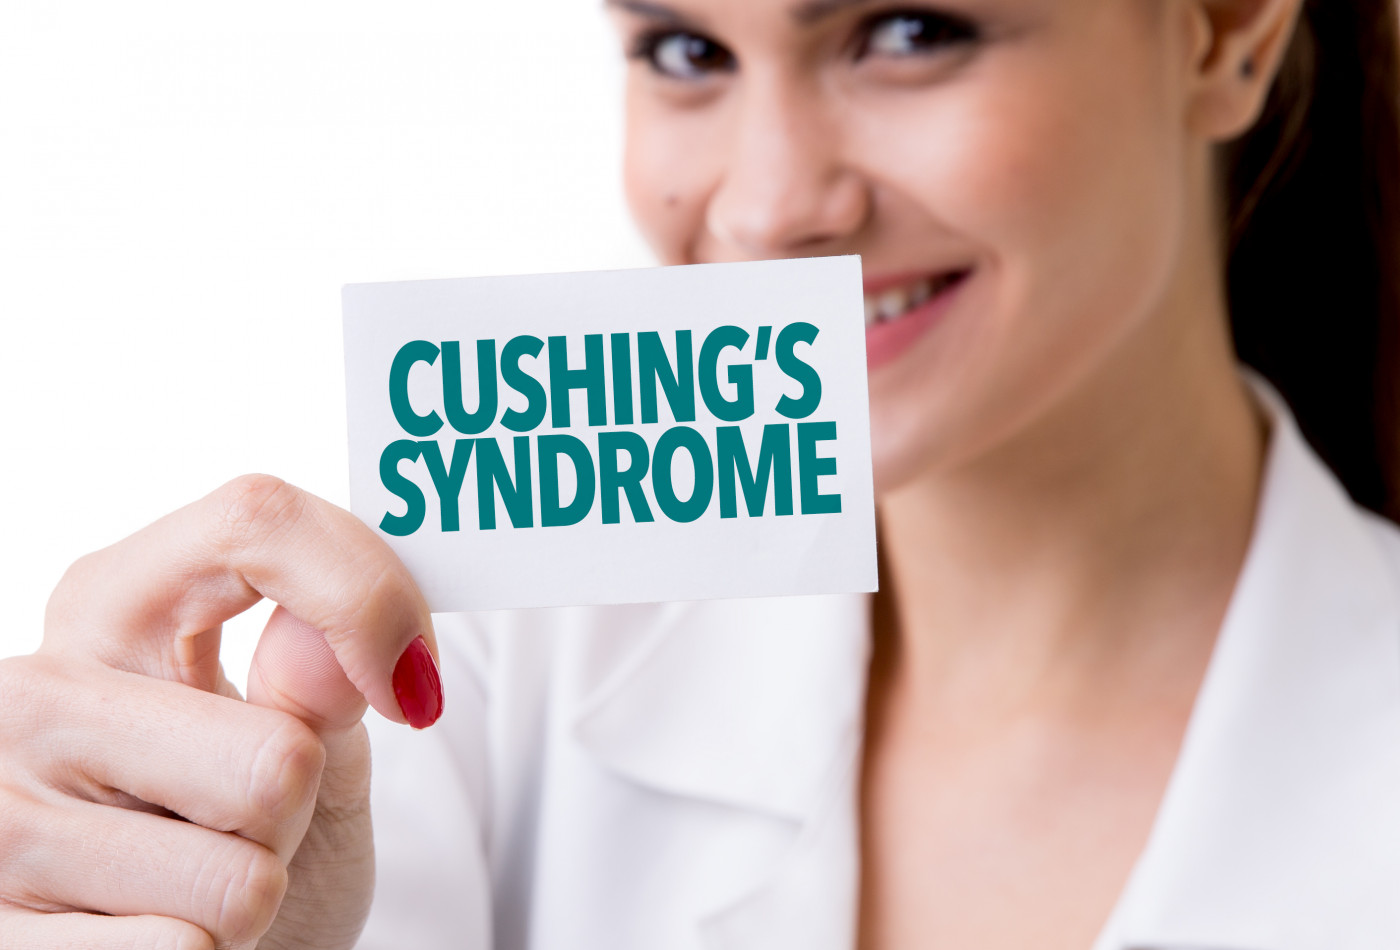 سندروم کوشینگ Cushing's Syndrome